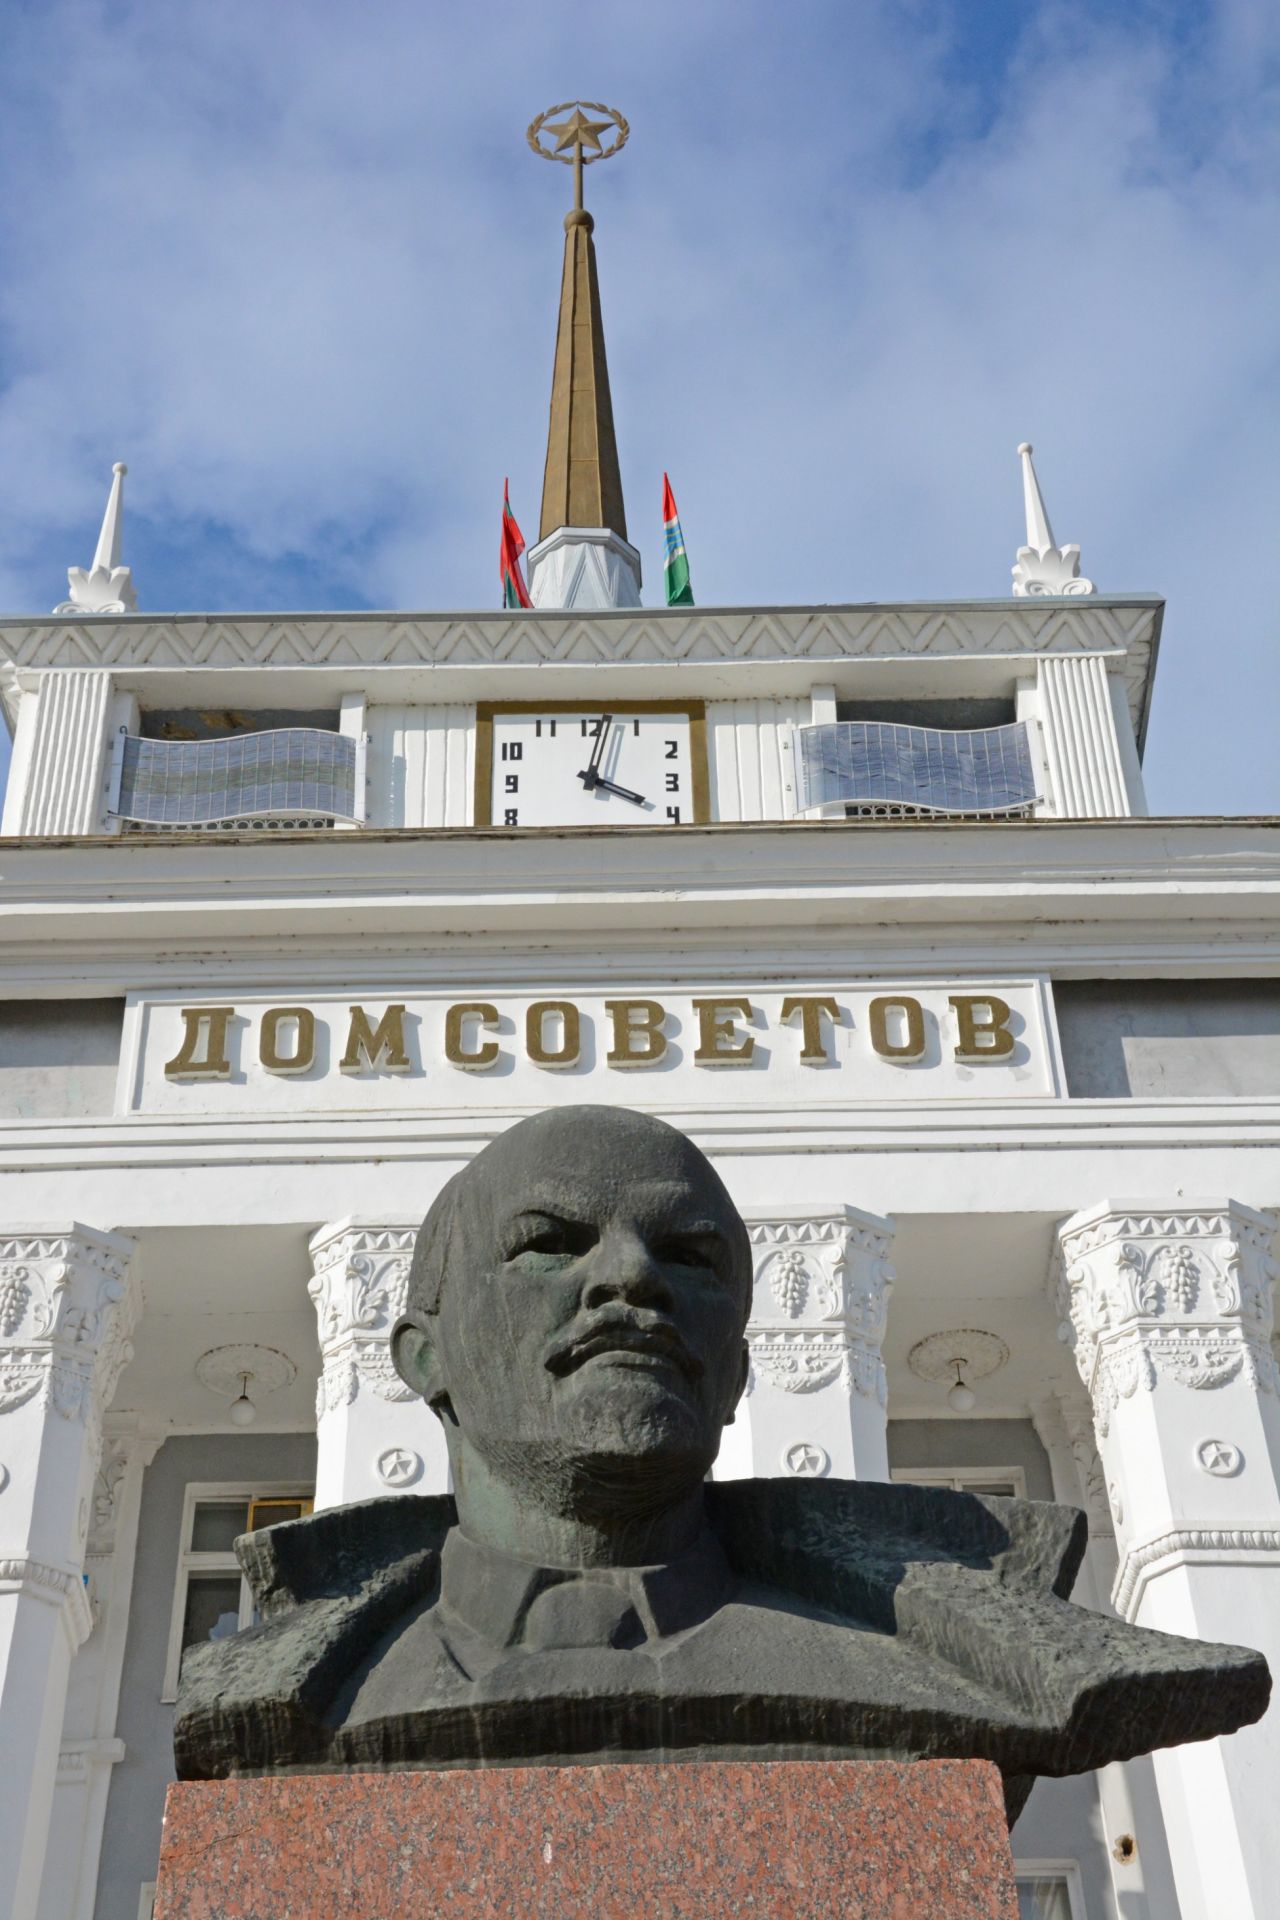 Statues of former Soviet leader Vladimir Lenin stand sentinel outside official buildings in Tiraspol.